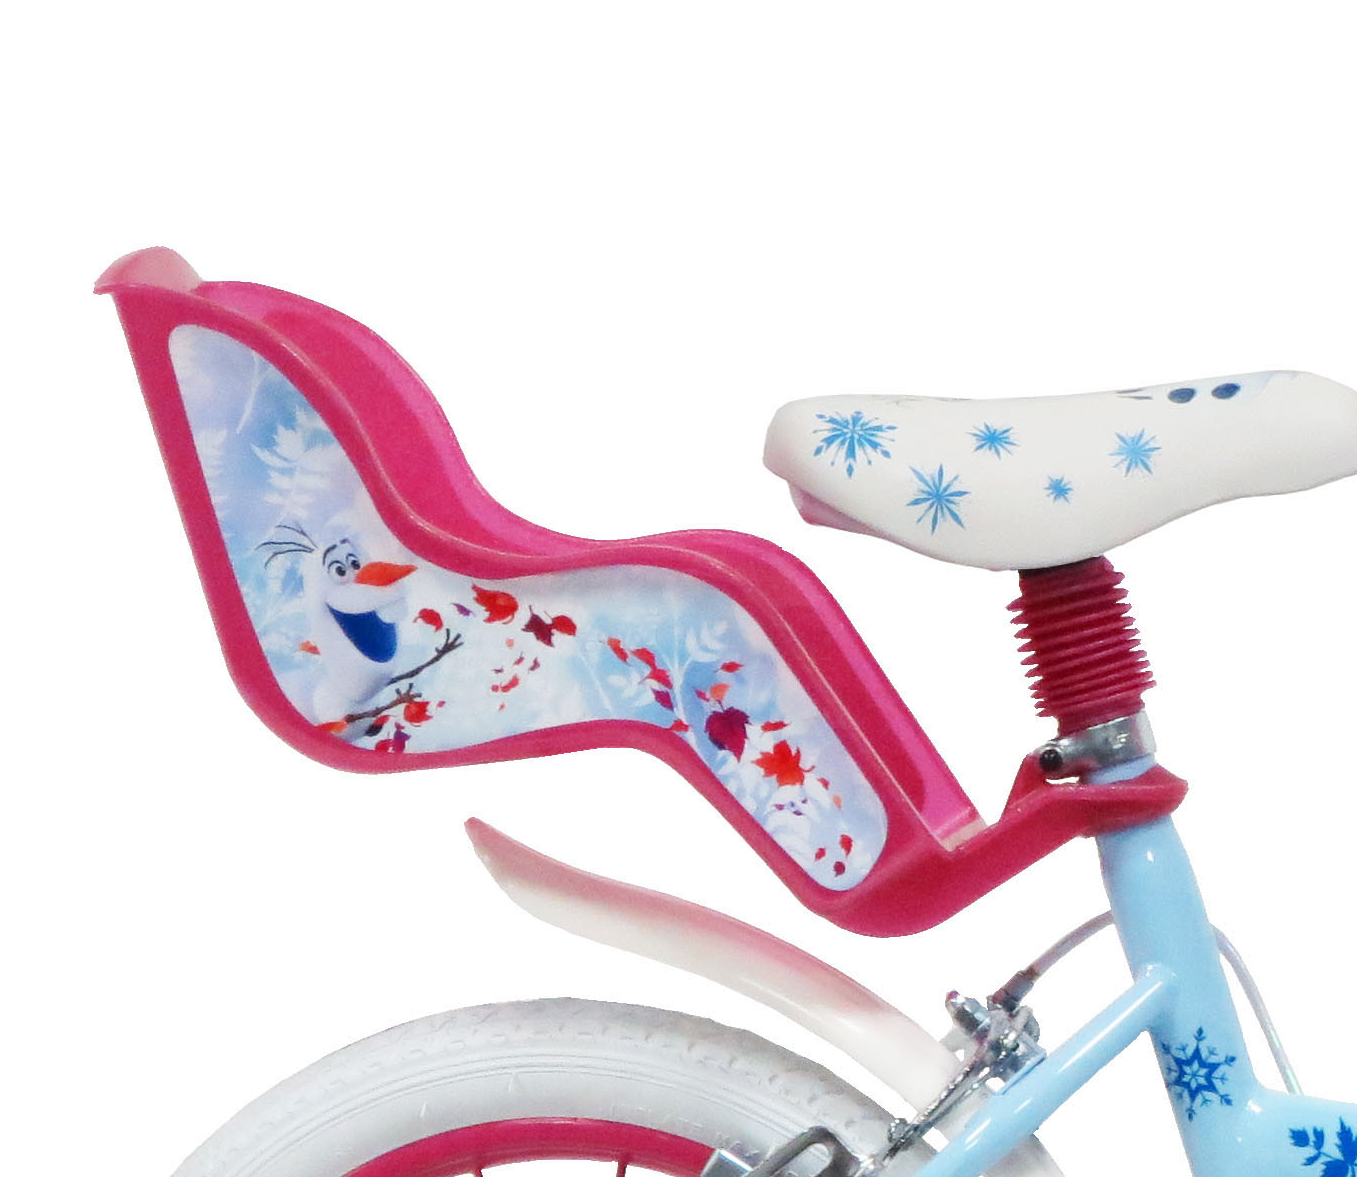 Bicicletta da bambini da 14 pollici con portababole - cestino e stabilizzatori laterali di disney frozen - DISNEY PRINCESS, Frozen